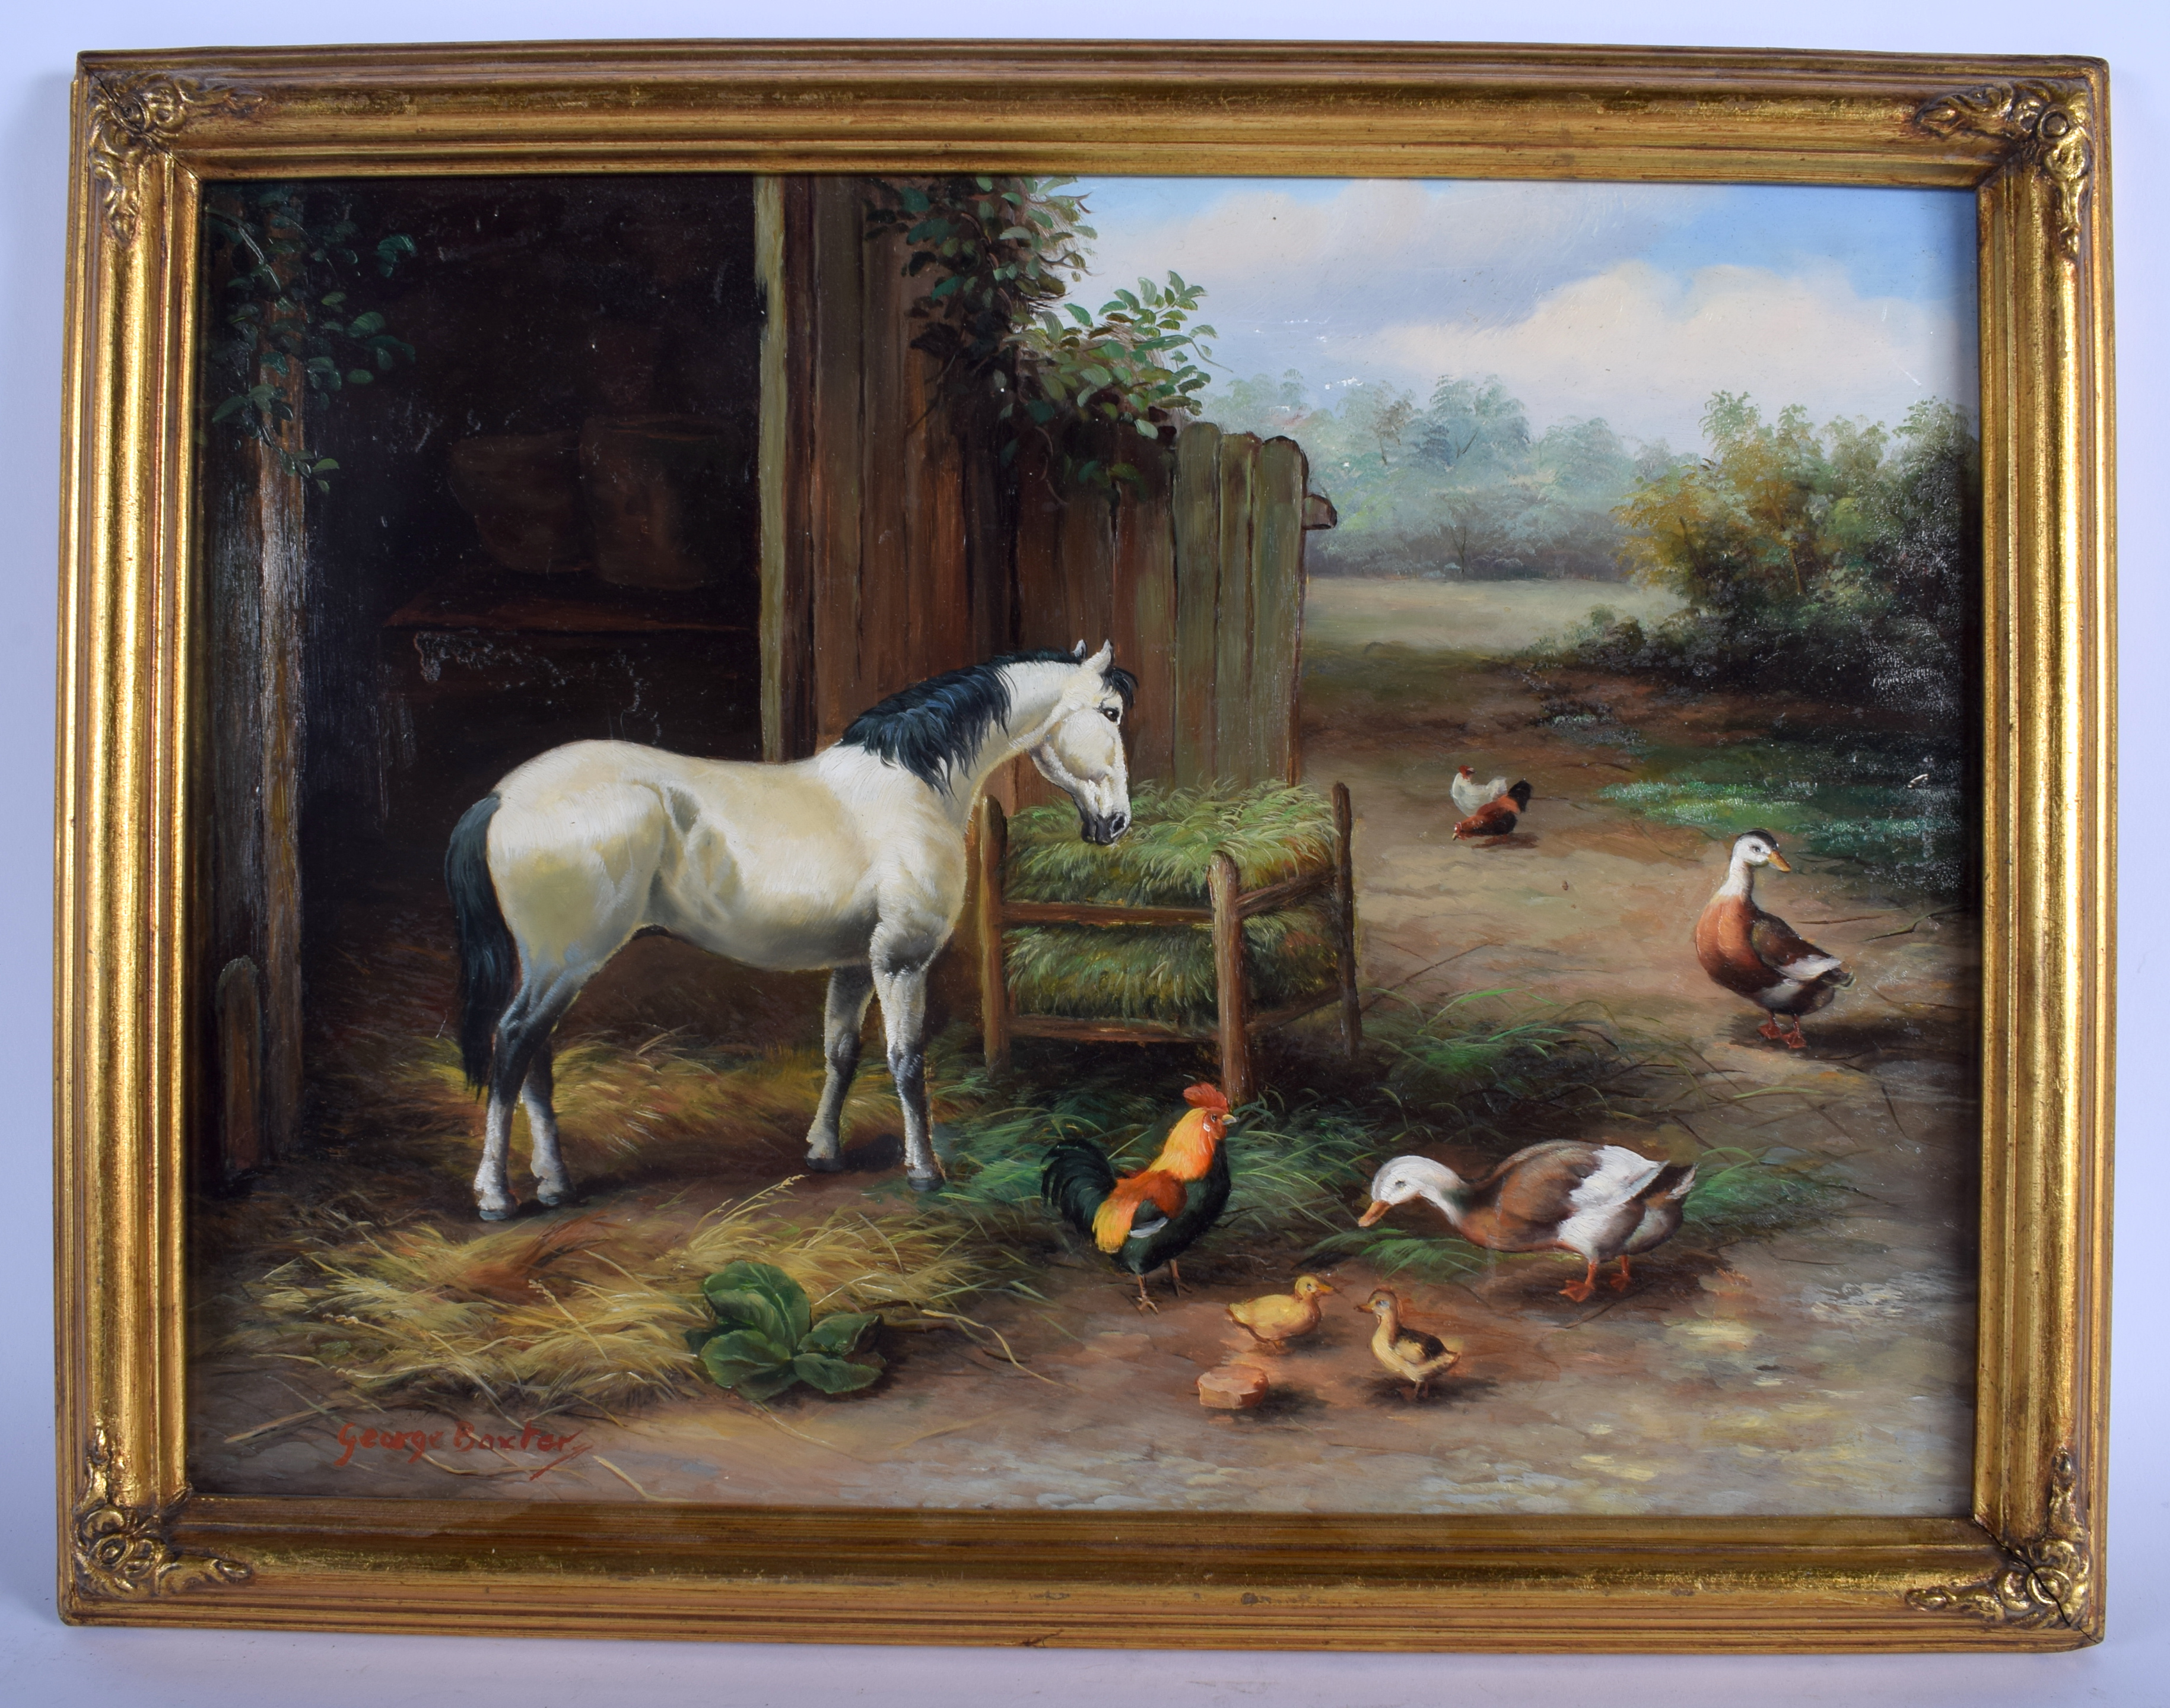 George Baxter (C1900) Farmyard Scene, Oil on board. Image 40 cm x 30 cm.